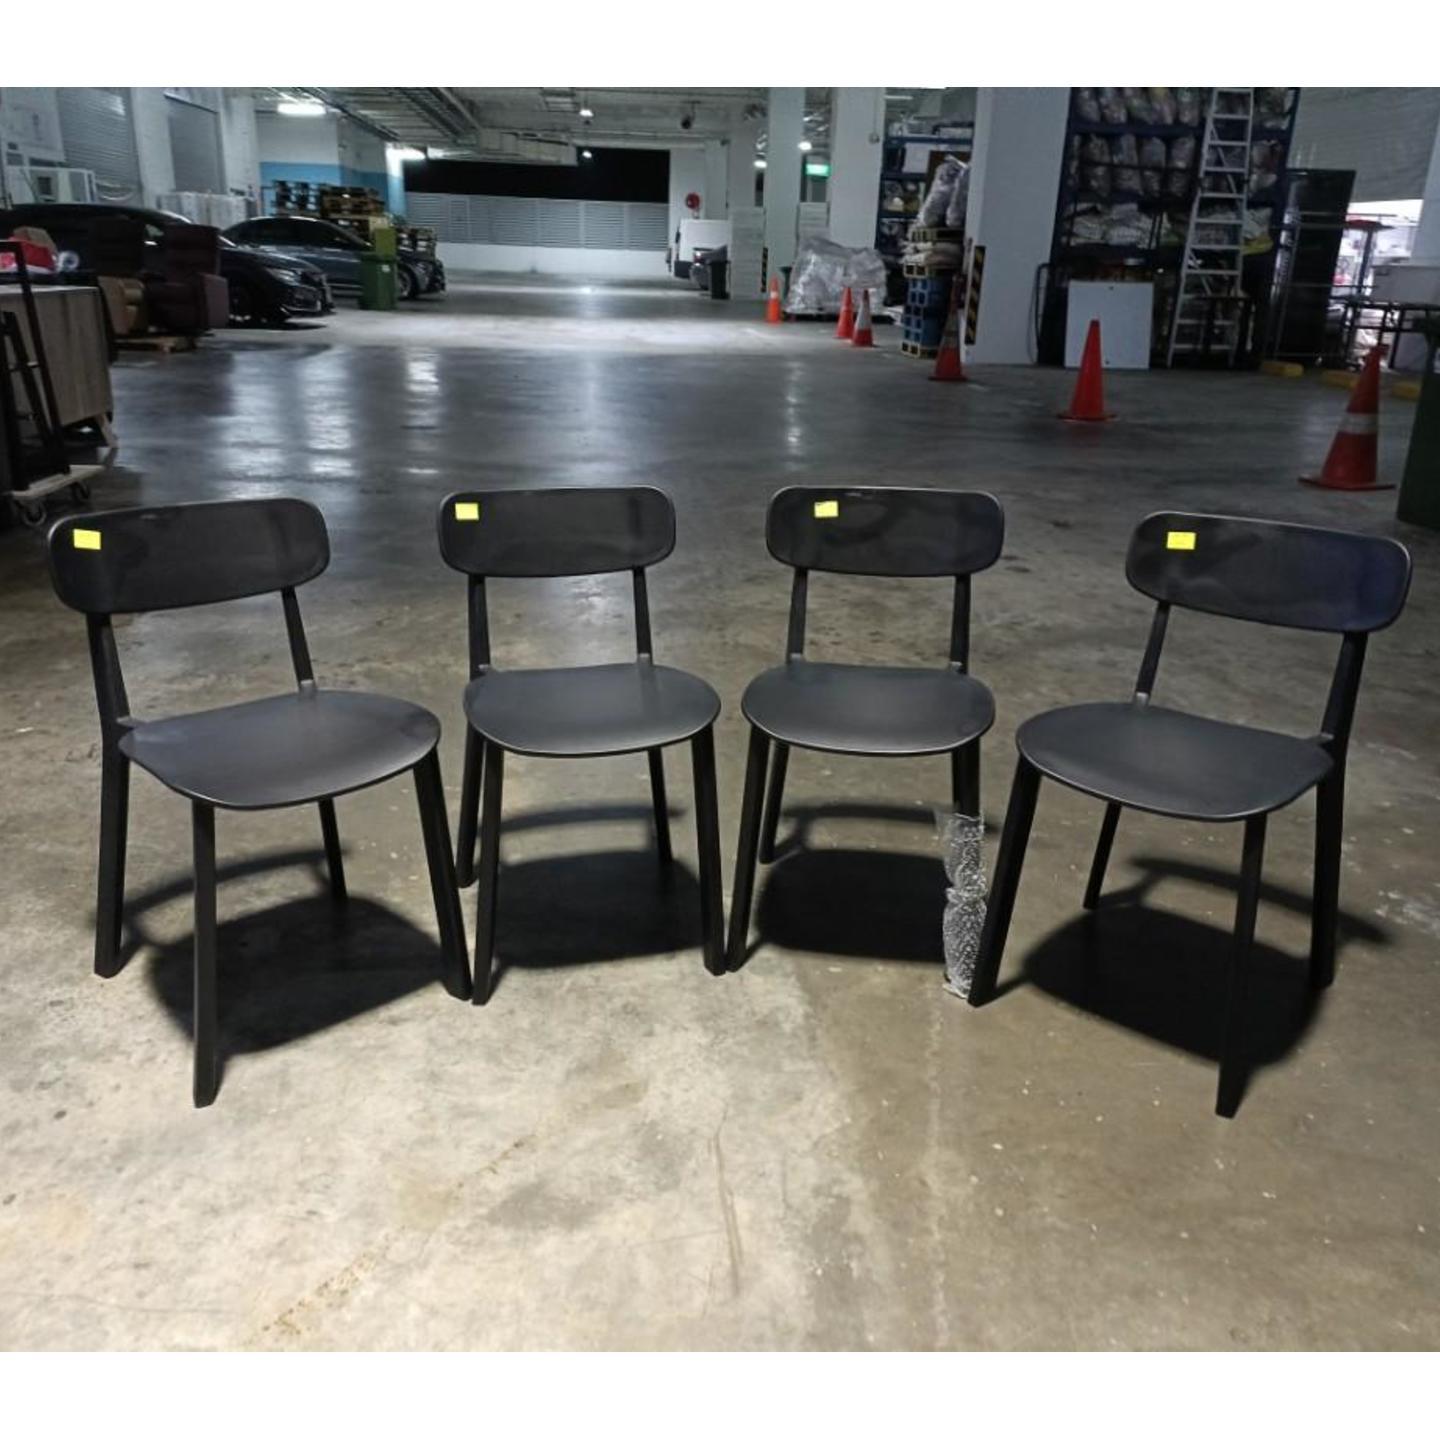 4 x NETTA Detachable Bar Chairs